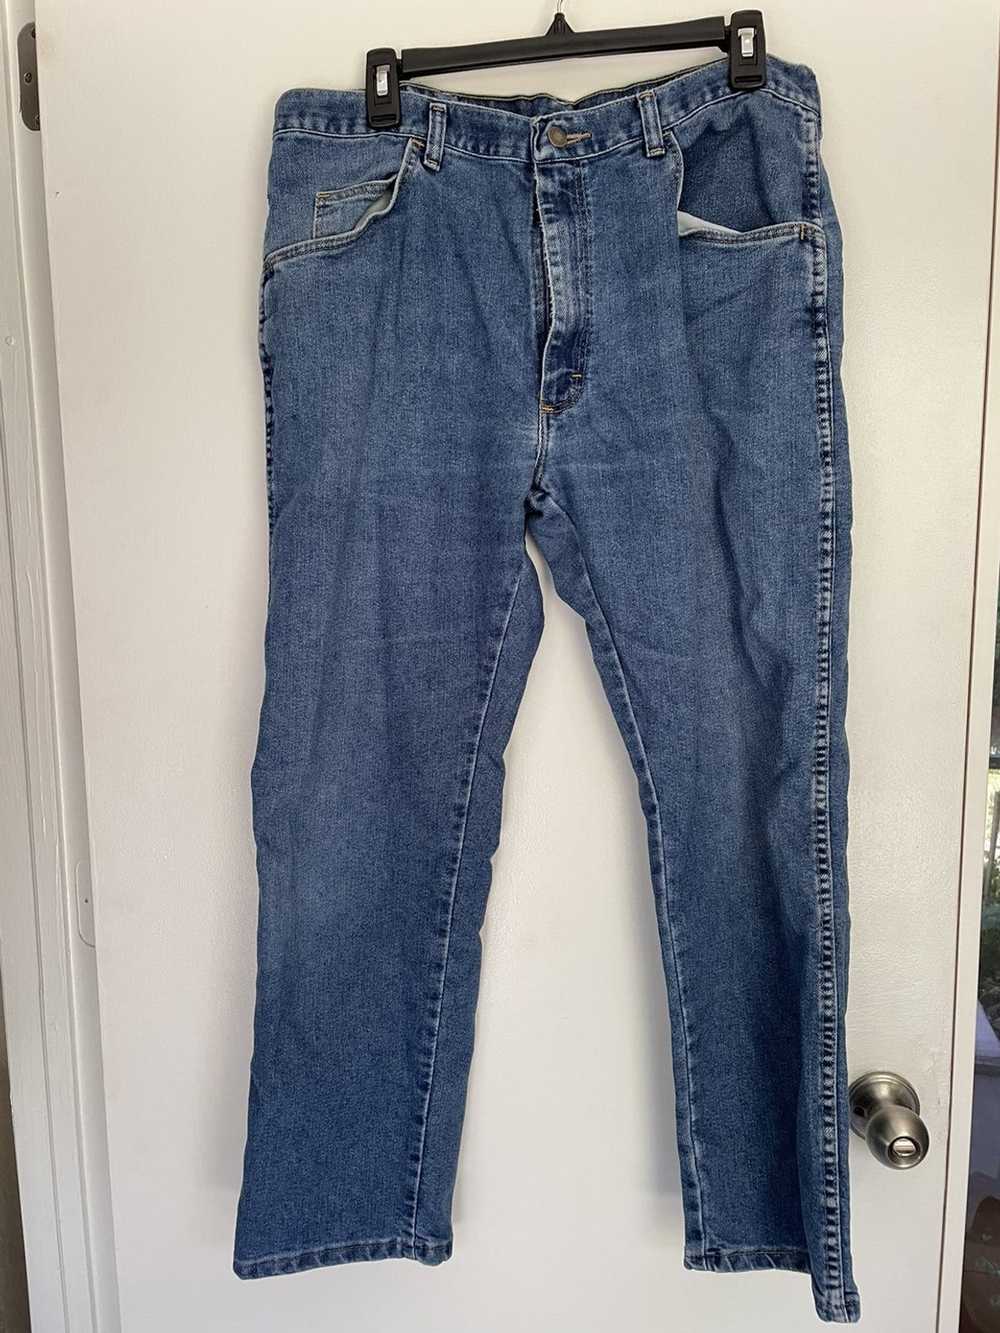 Wrangler Wrangler Jeans - image 1